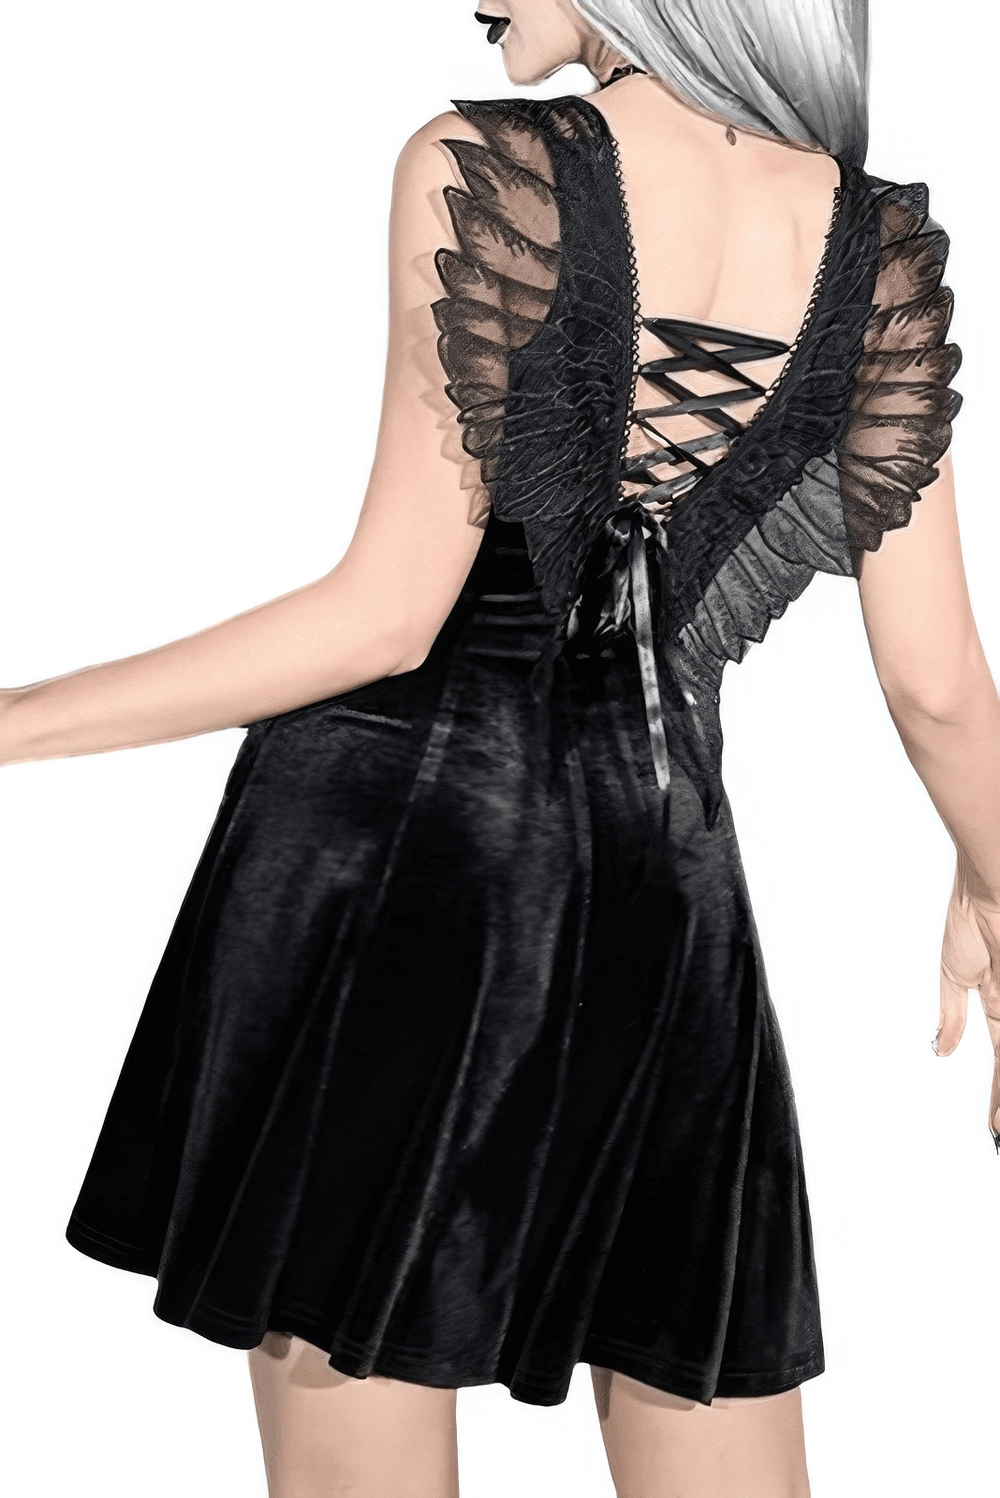 Elegant Black Velvet Butterfly Dresses For Women / Fashion Clothing in Gothic Style